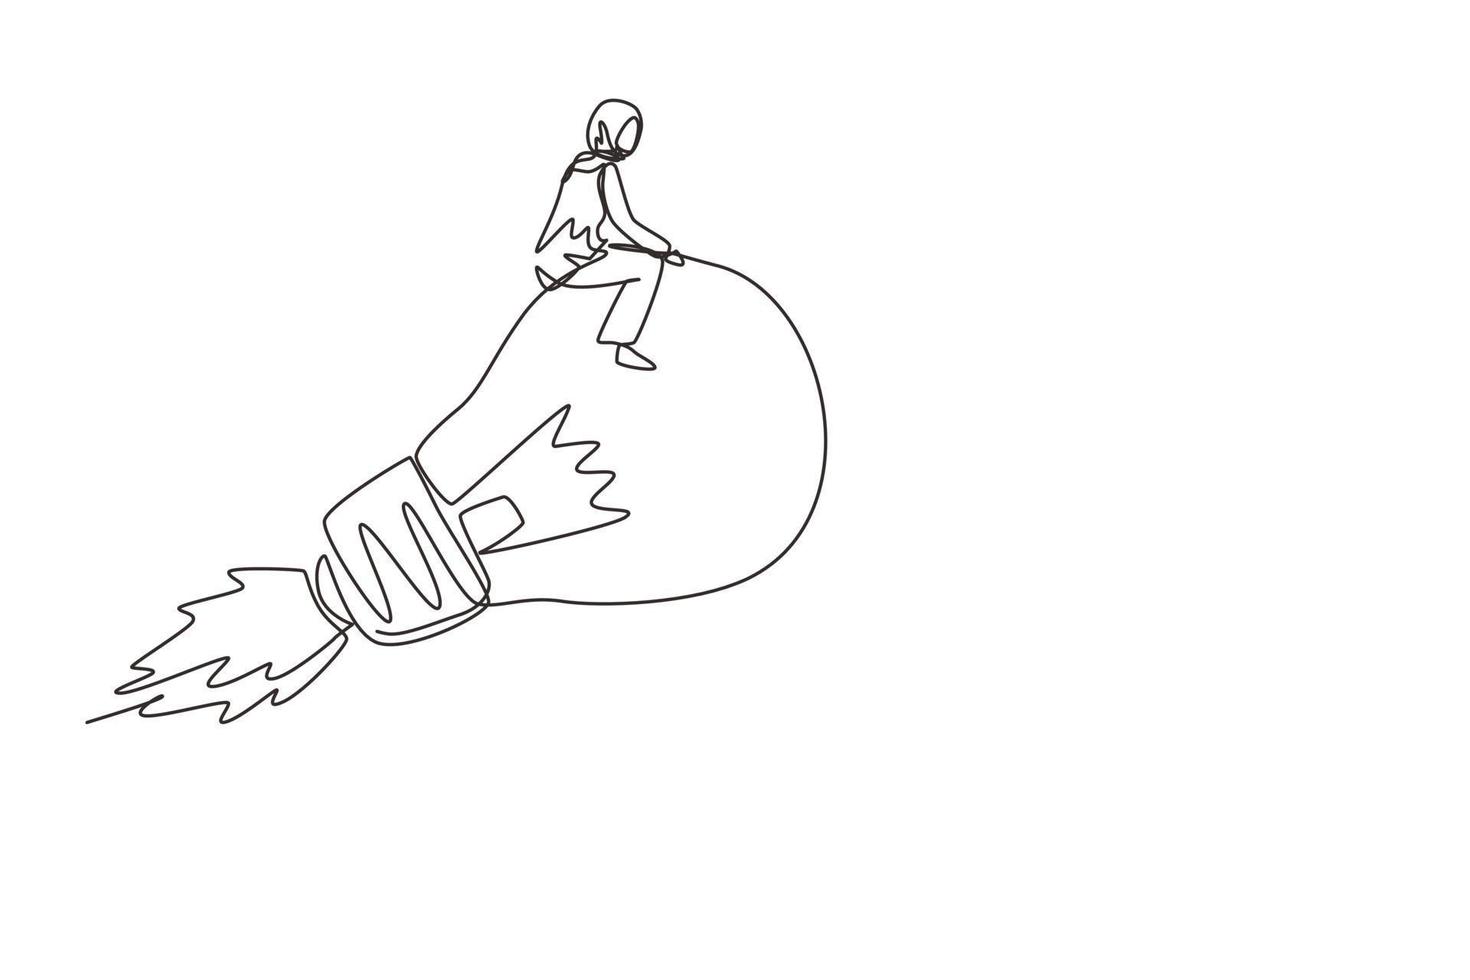 disegno a linea continua singola carina donna d'affari araba in sella a una lampada a lampadina luminosa volante con razzo. attività di avvio dell'innovazione per raggiungere l'obiettivo di successo. illustrazione vettoriale di un disegno di linea